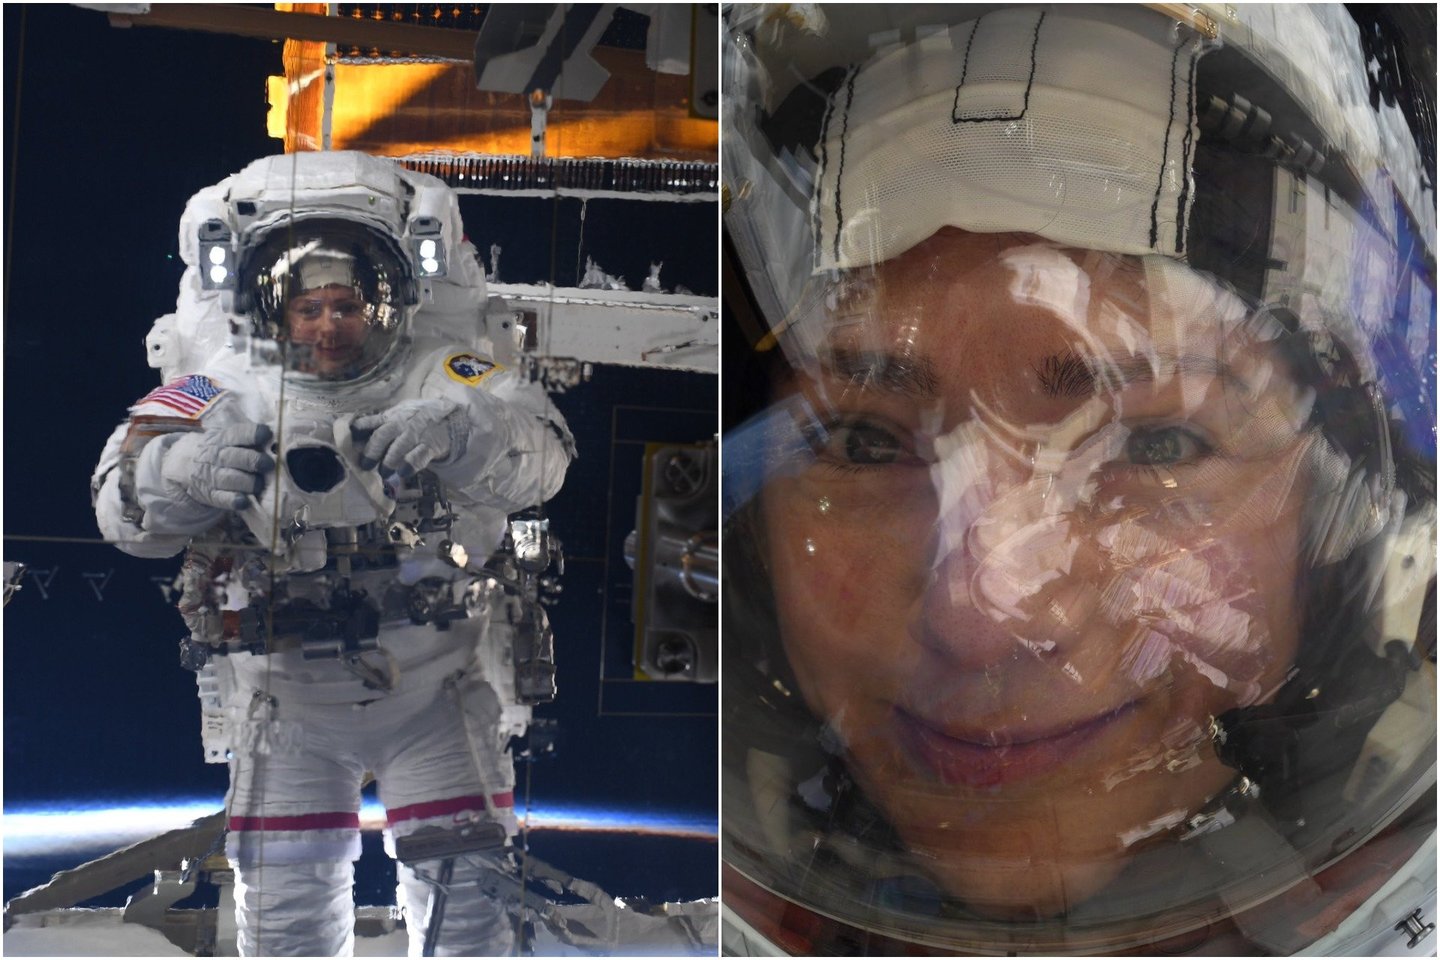  NASA astronautė Jessica Meir neseniai savo „Twitter“ paskyroje pasidalino turbūt vienomis įspūdingiausių asmenukių pasaulyje.<br> J.Meir nuotr.